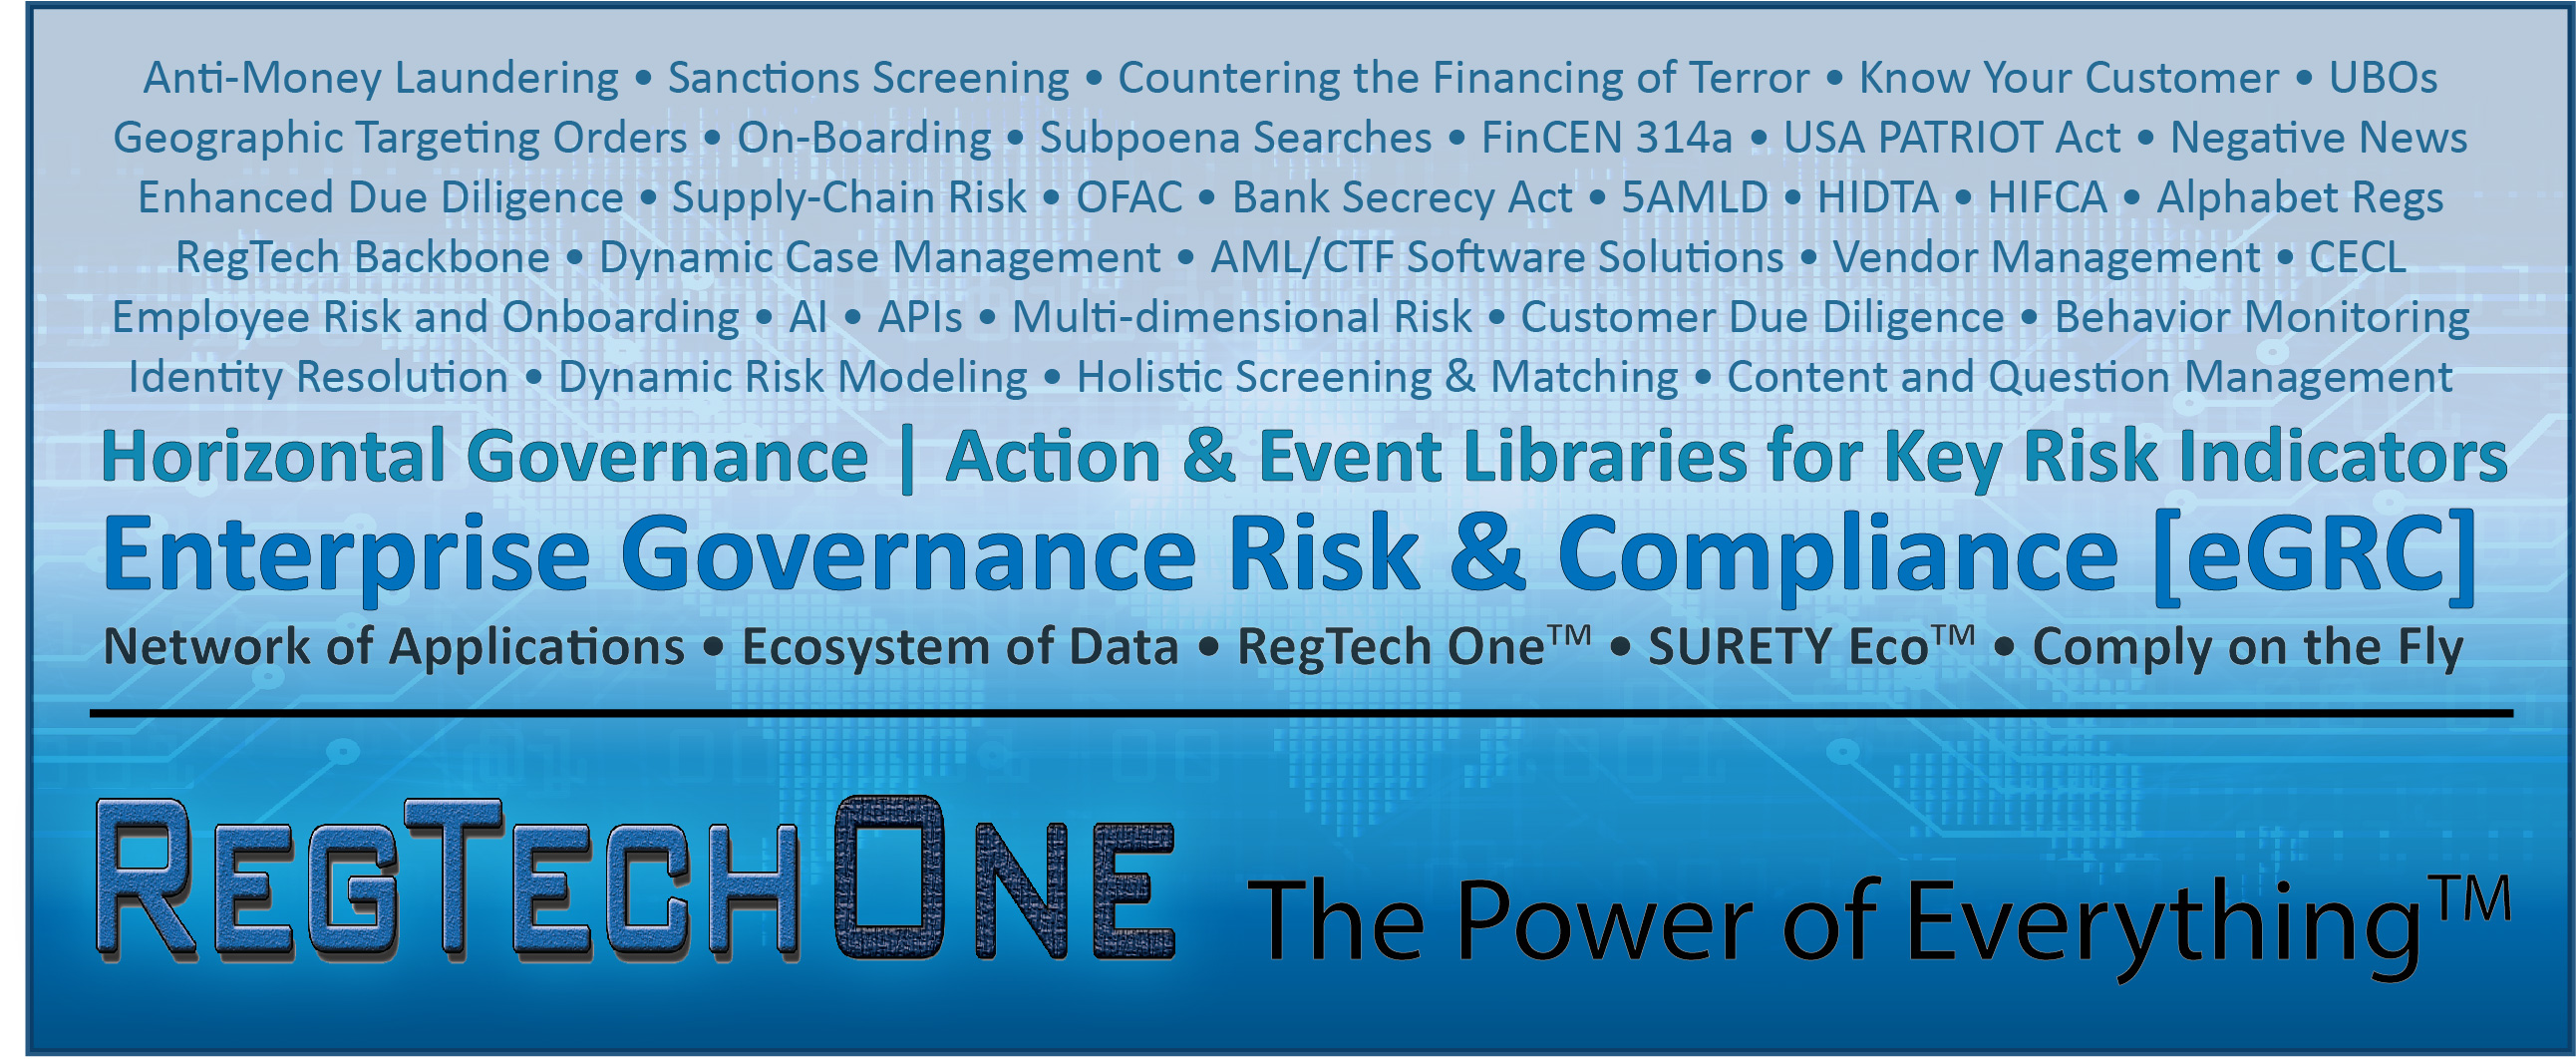 RegTech One art--RegTech platform supports horizontal governance in GRC